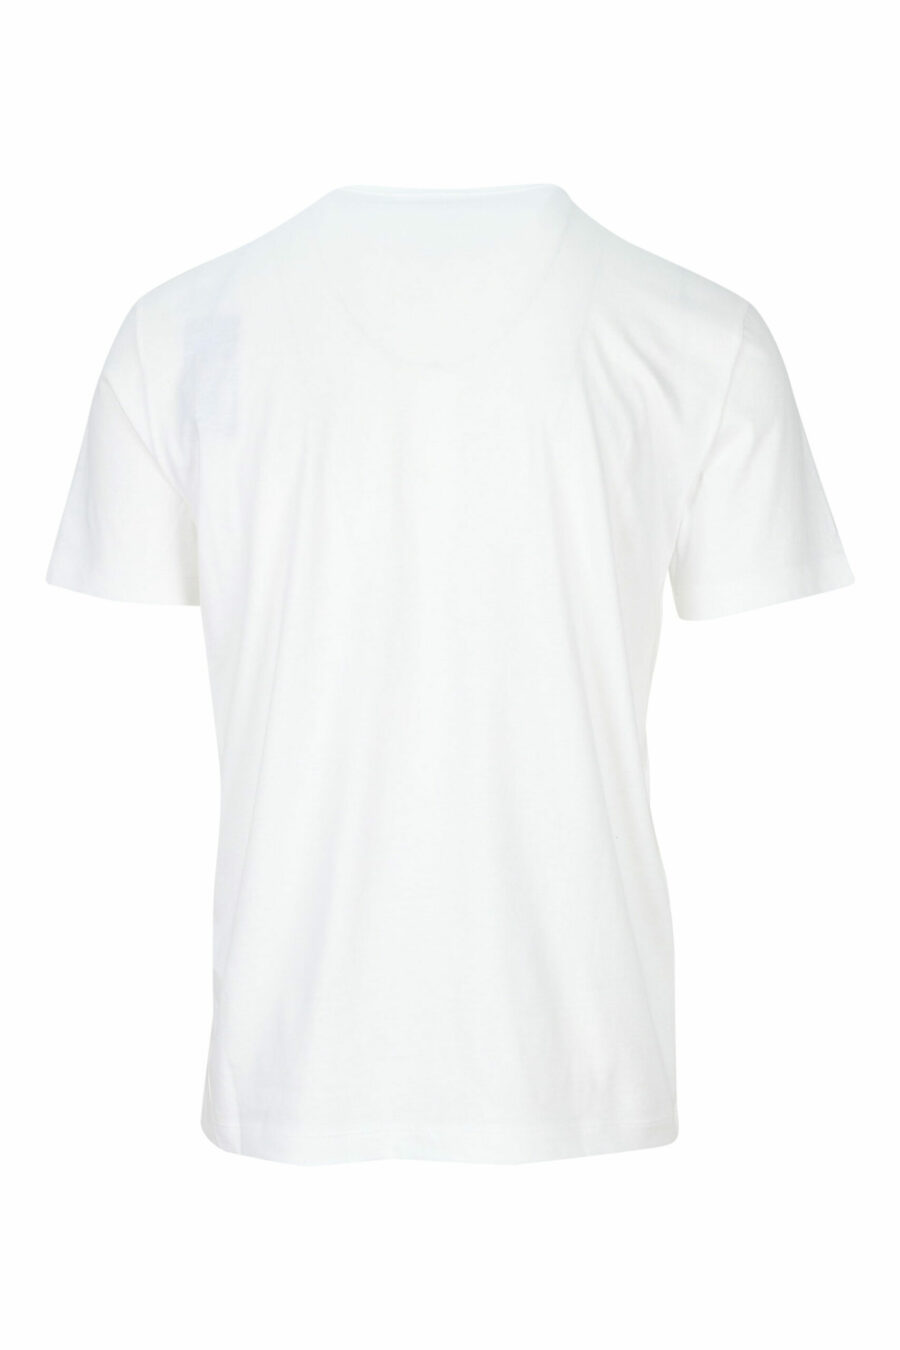 Weißes T-Shirt mit schwarzem Maxilogo "lux identity" - 8057767688486 1 skaliert